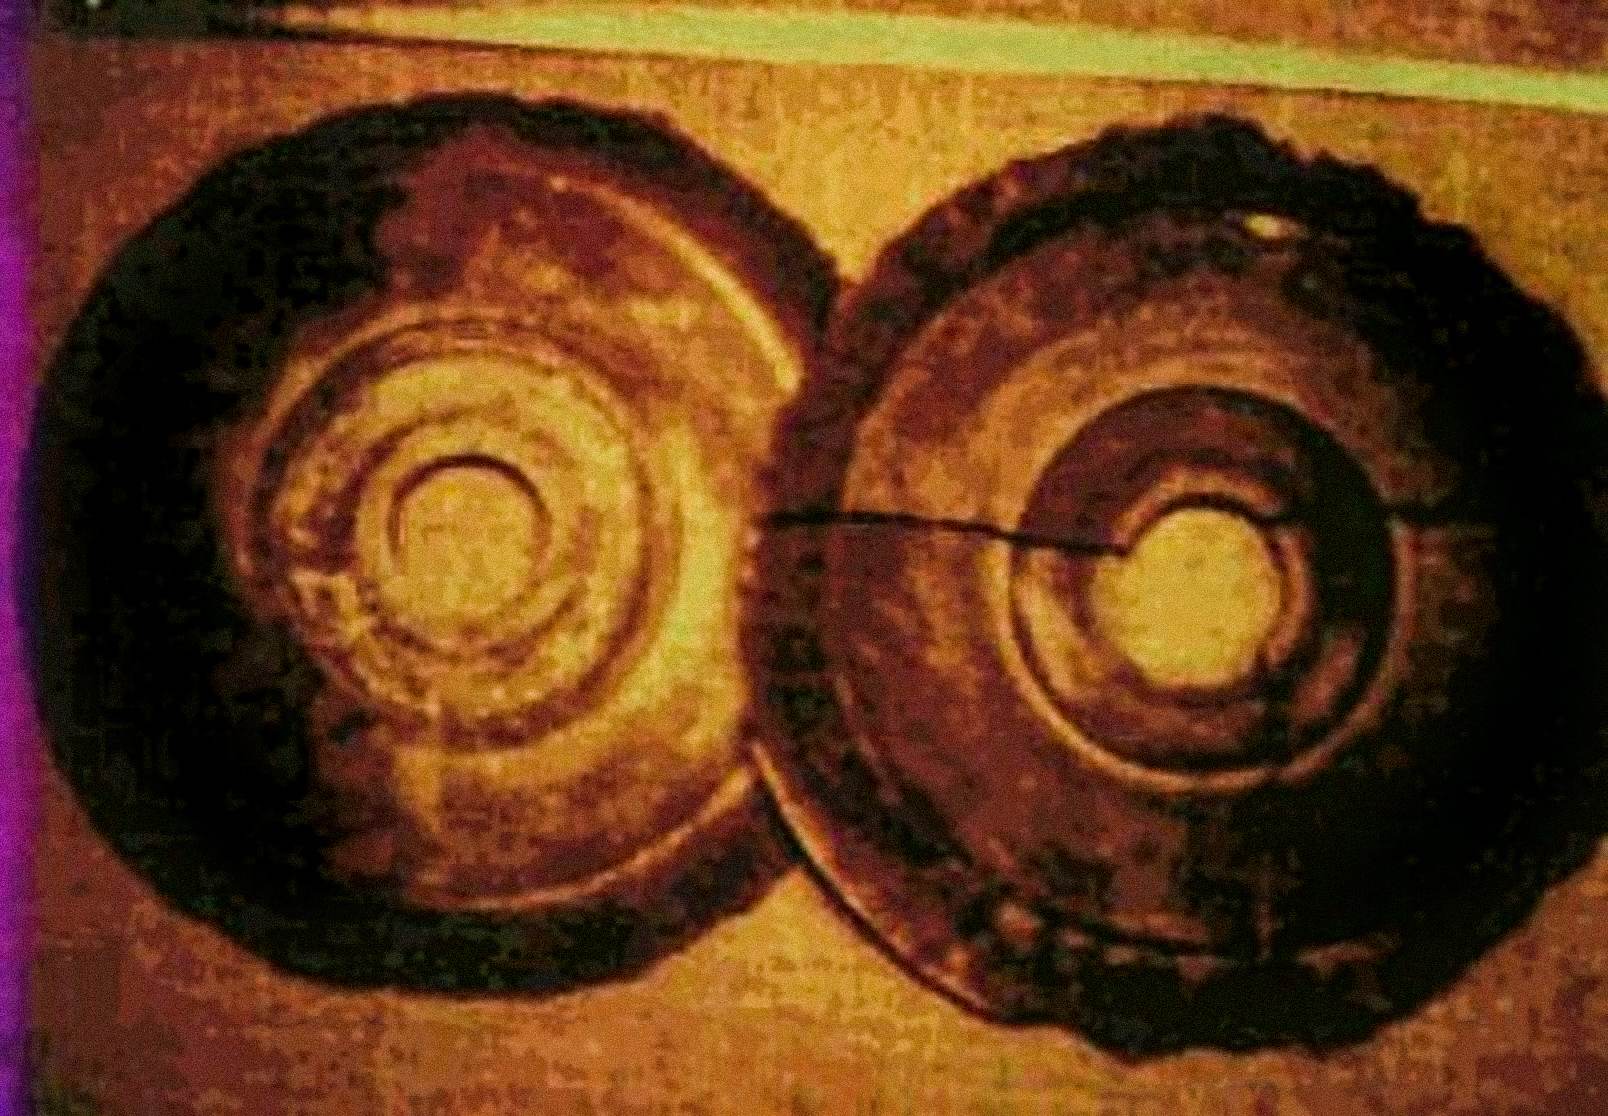 1974 metais austrų inžinierius Ernstas Wegereris nufotografavo du diskus, kurie atitiko Dropos akmenų aprašymus. Kai jis pamatė eksponuojamus akmeninius diskus, jis lankėsi su gidu po Banpo muziejų Siane. Jis teigia matęs skylę kiekvieno disko centre ir hieroglifus iš dalies sutrupėjusiuose į spiralę panašiuose grioveliuose.